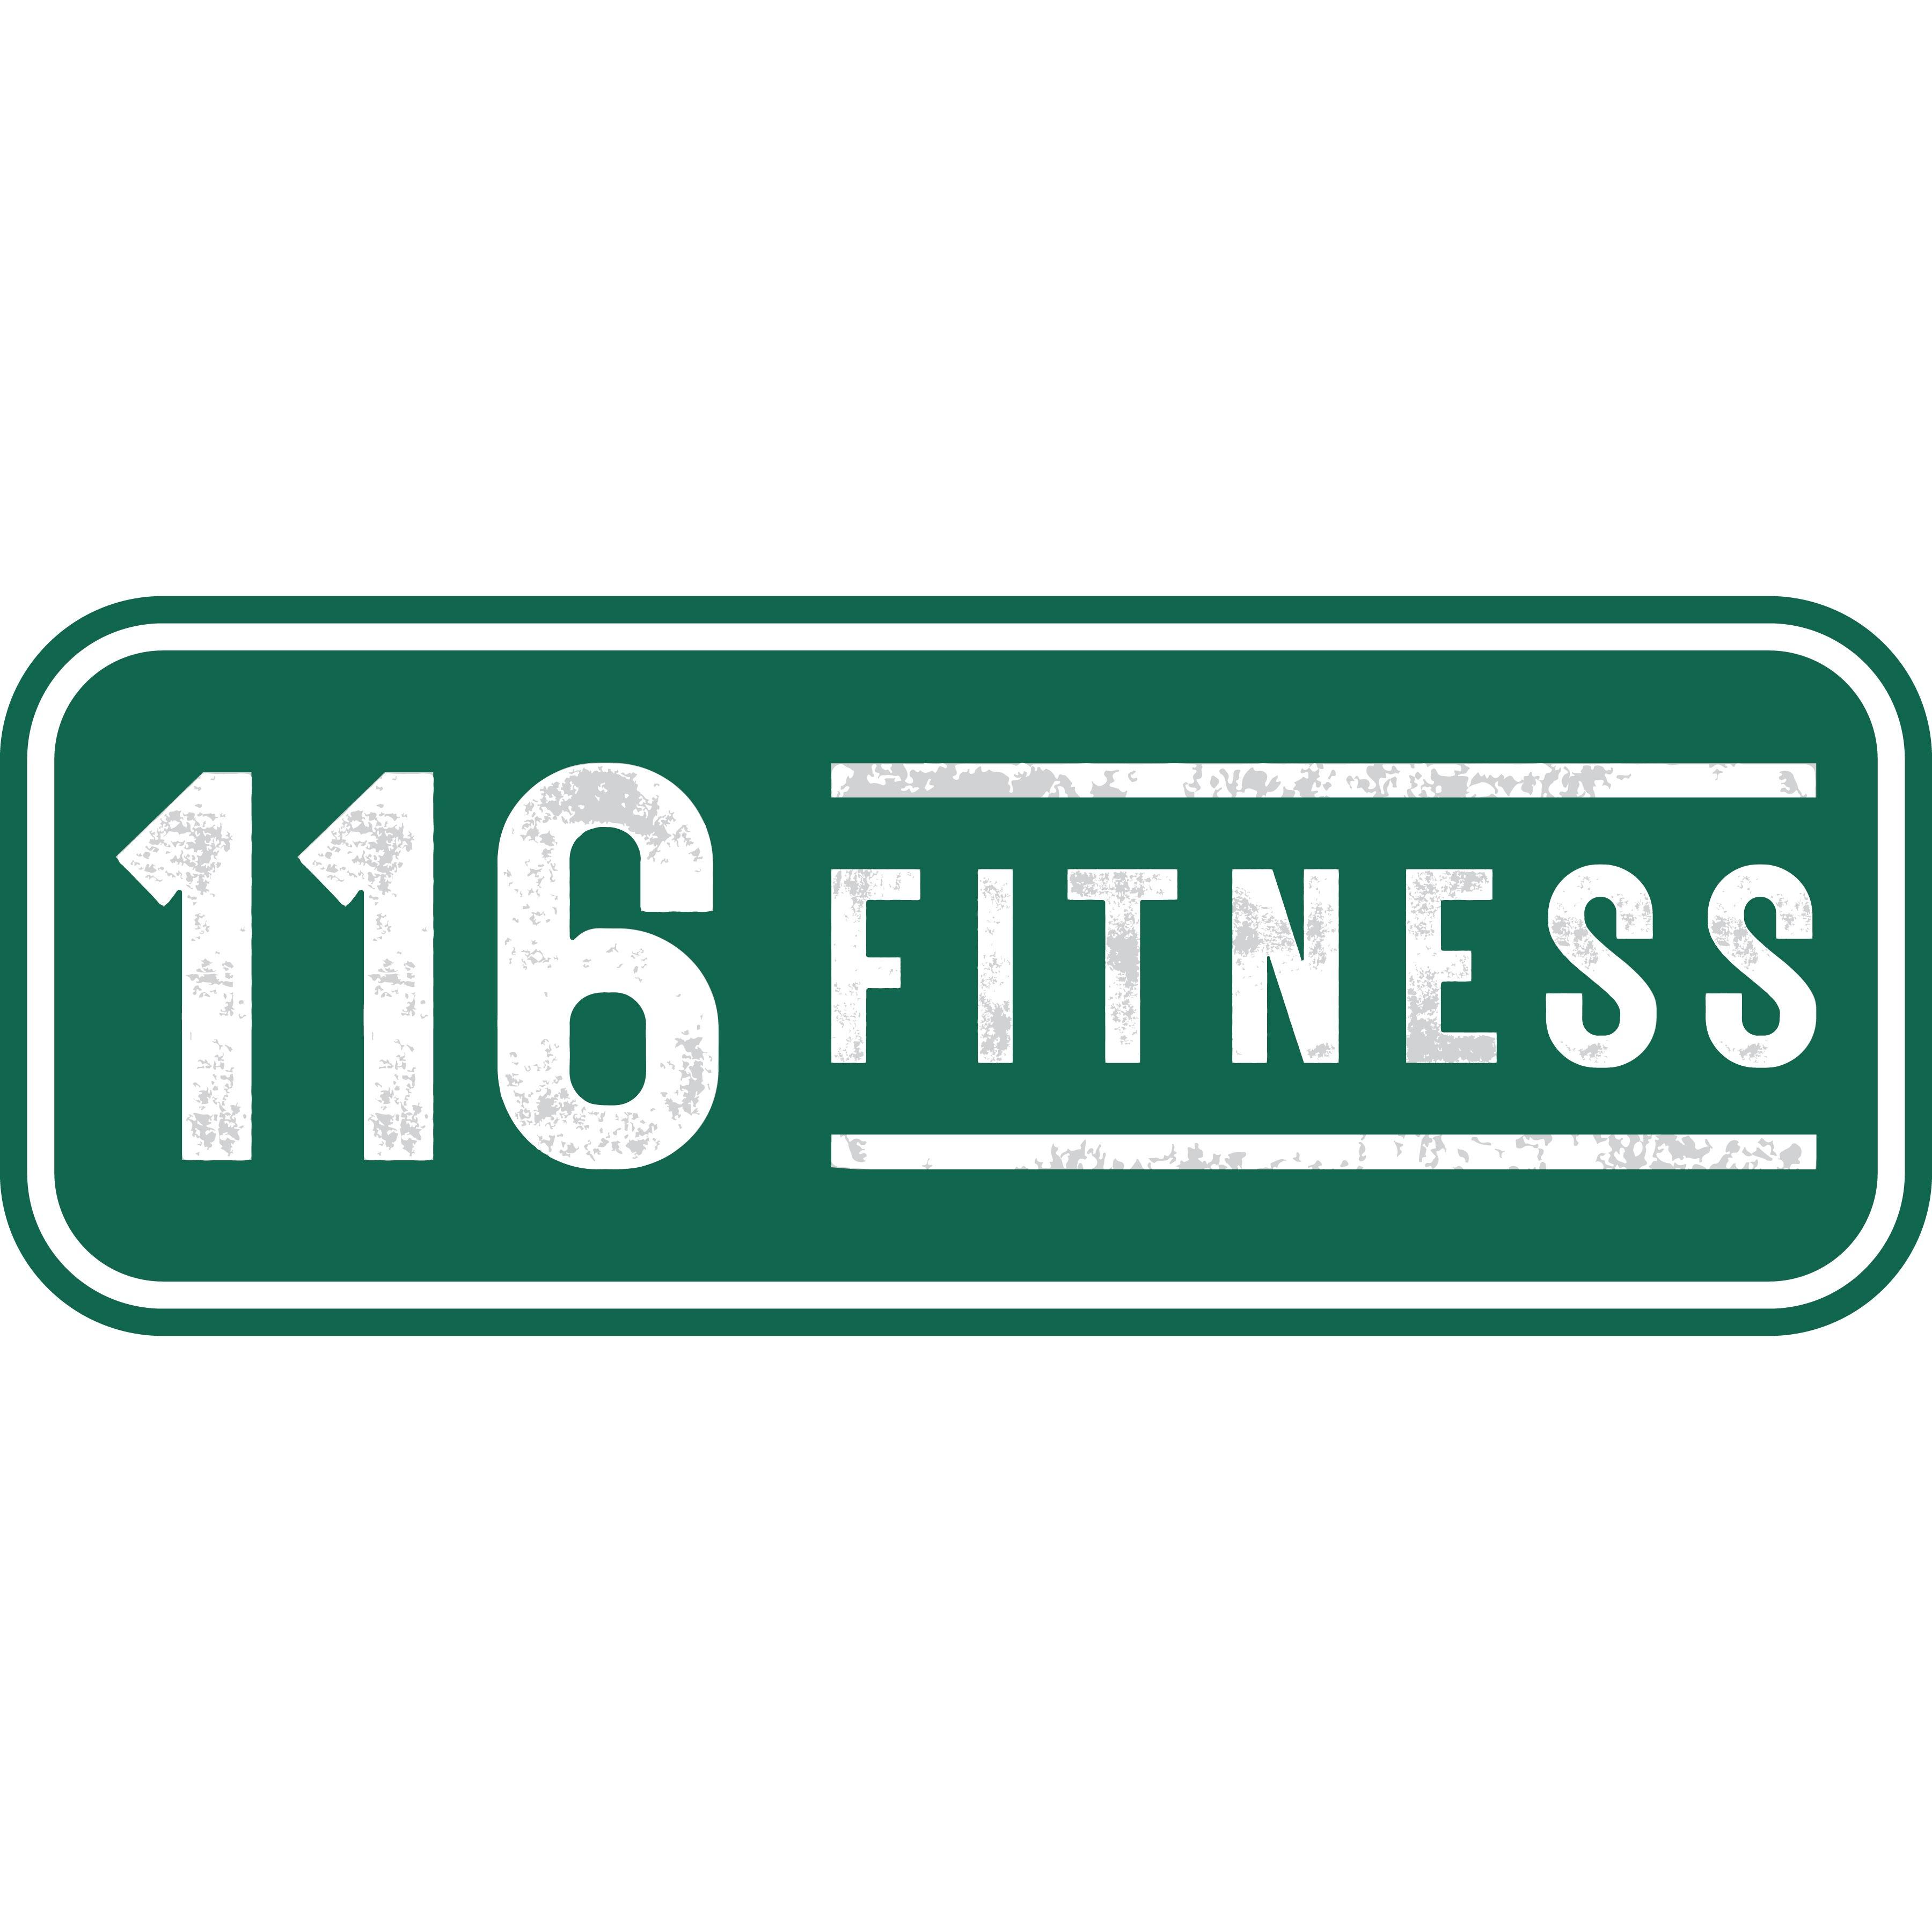 116 Fitness - Hinesburg, VT 05461 - (802)482-5900 | ShowMeLocal.com